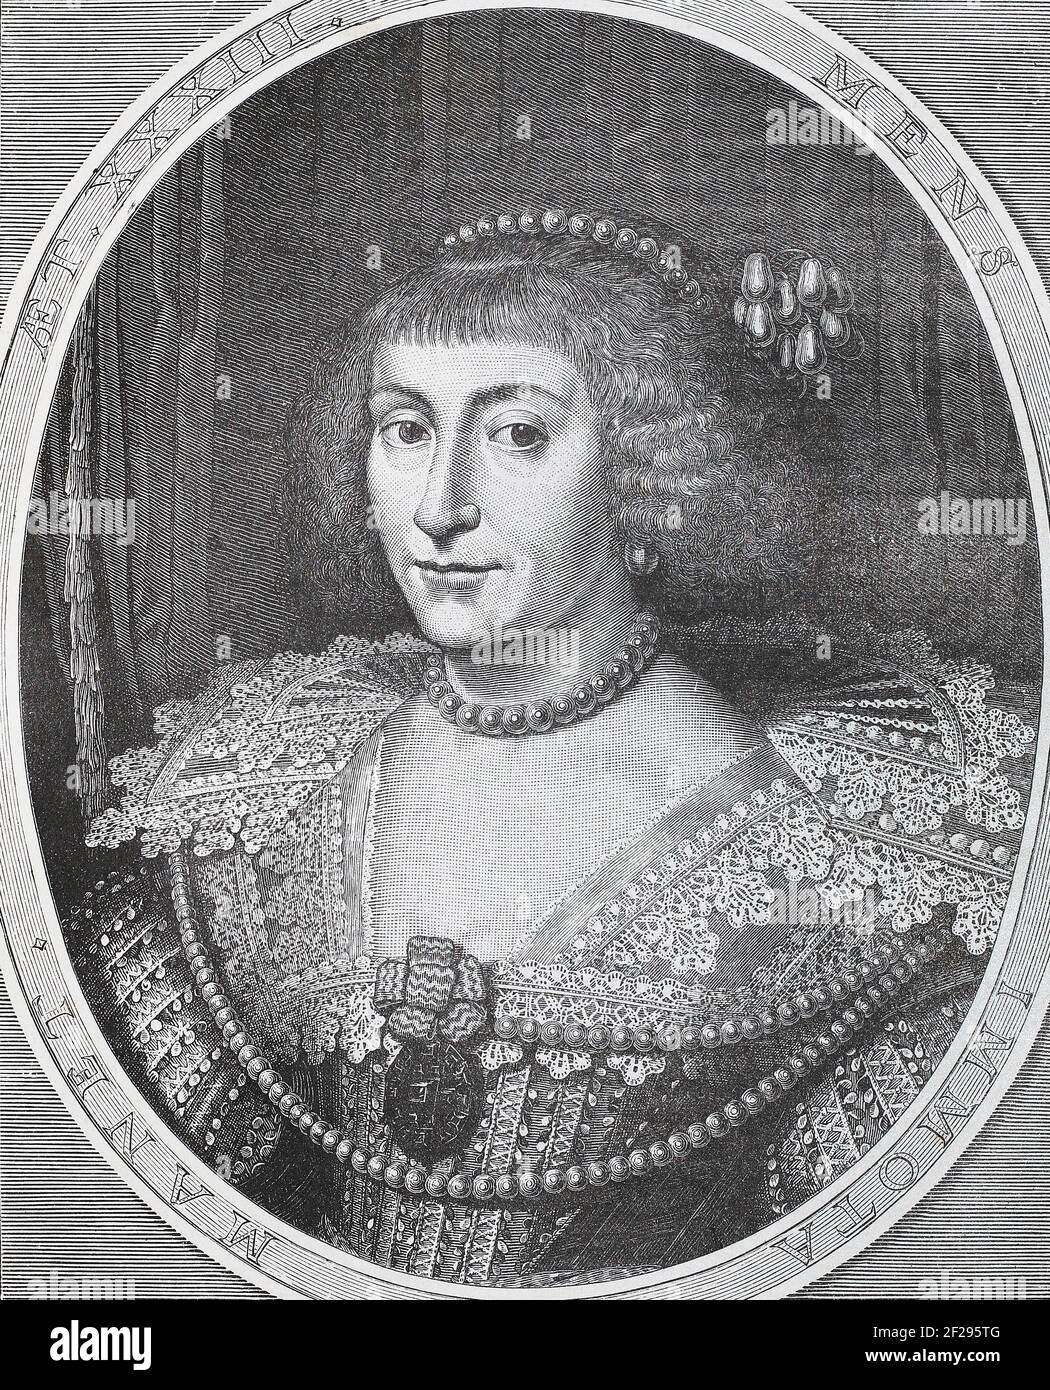 Elisabetta Stuart (19 agosto 1596 – 13 febbraio 1662) è stata Elettressa del Palatinato e, in breve, Regina della Boemia come moglie di Federico V del Palatinato. Poiché il regno di suo marito in Boemia e Palatinato durò solo per un inverno, Elisabetta viene spesso chiamata "Regina d'inverno". Elisabetta era la seconda figlia e la figlia maggiore di Giacomo VI e io, re di Scozia, Inghilterra e Irlanda, e sua moglie, Anna di Danimarca. Con la scomparsa dell'ultimo monarca Stuart nel 1714, il nipote di Elisabetta succedette al trono britannico come Giorgio i, dando inizio alla dinastia Hanoveriana. Foto Stock